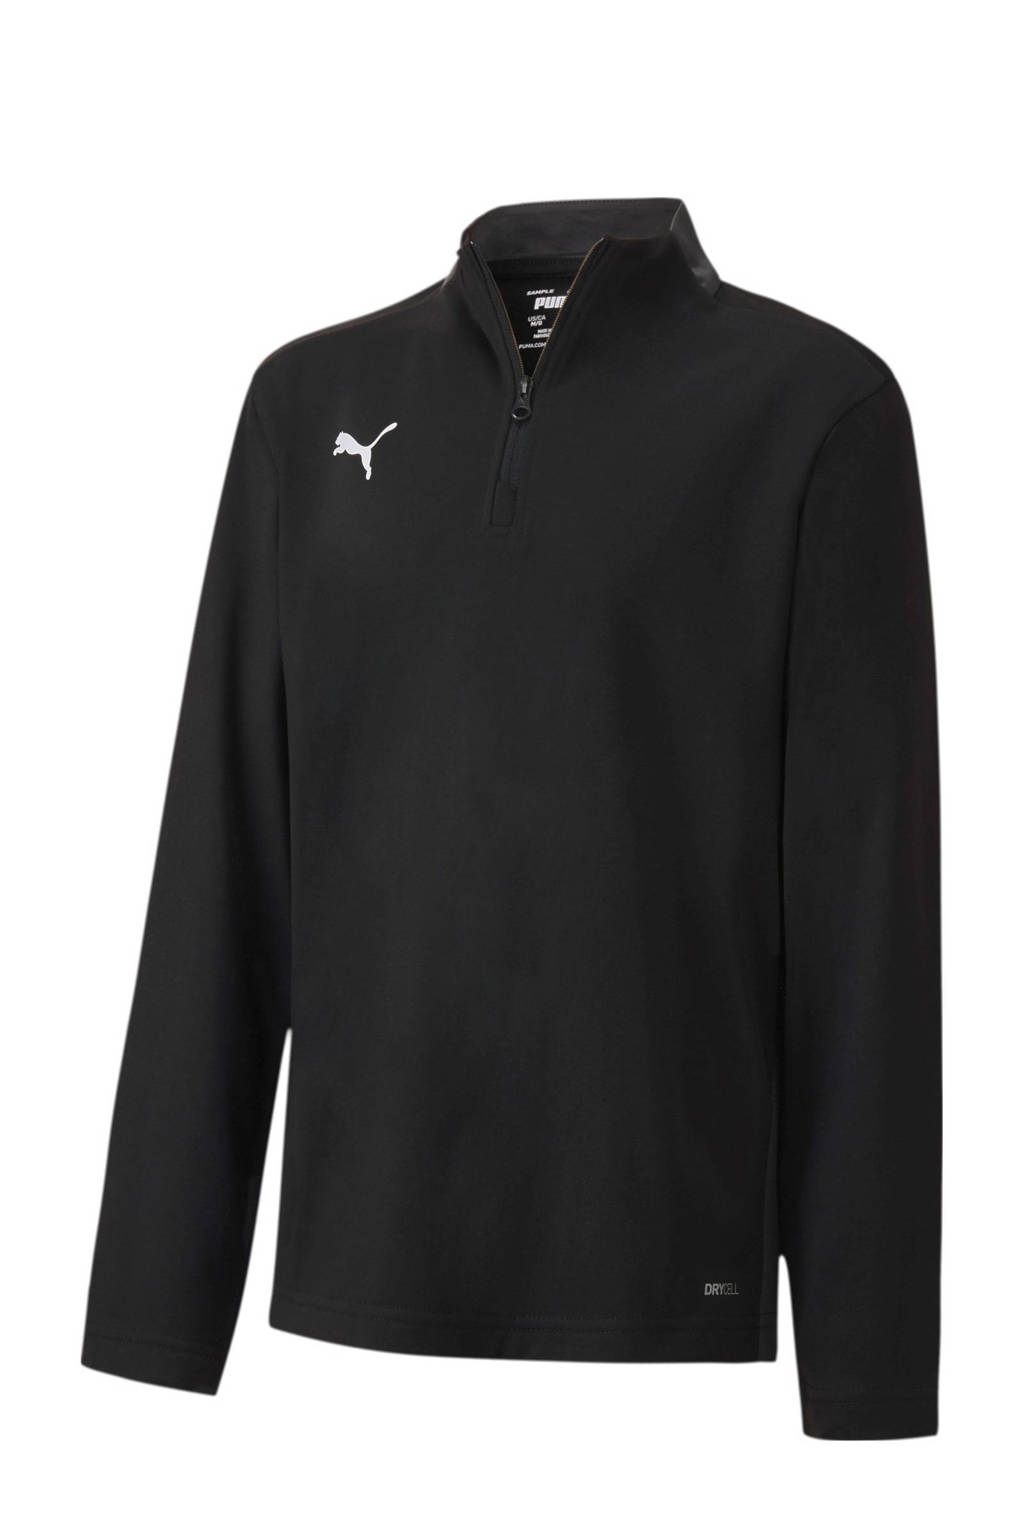 Puma Junior  voetbalsweater zwart, Zwart